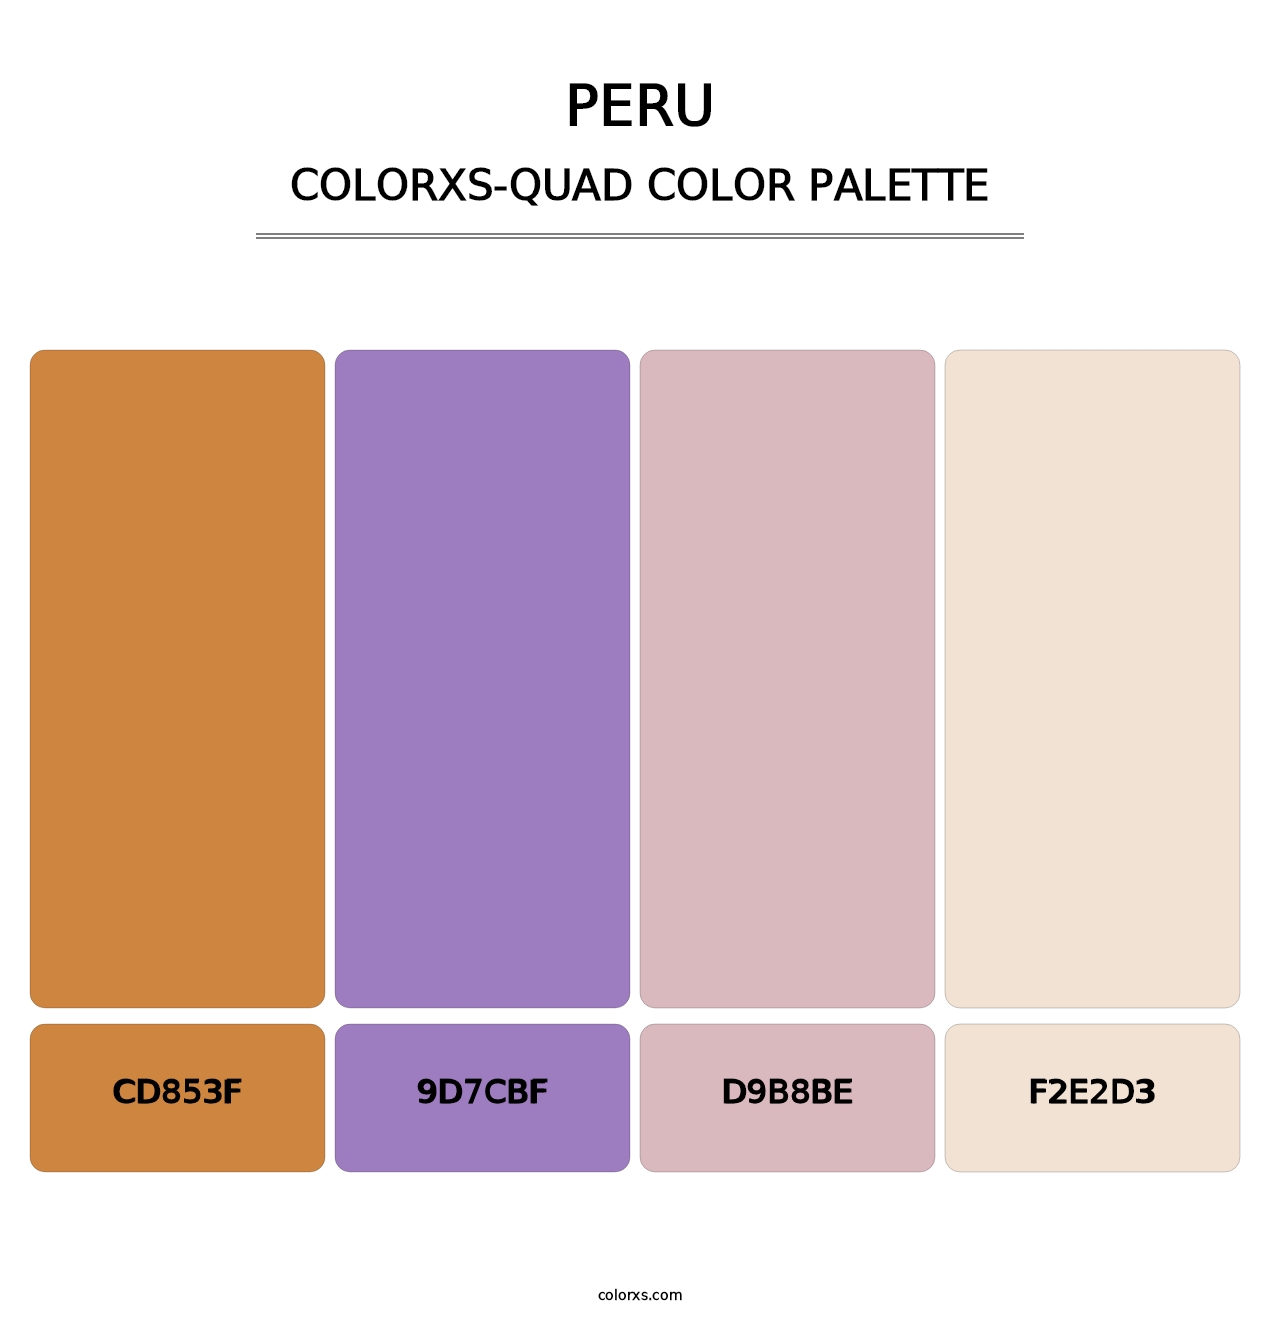 Peru - Colorxs Quad Palette